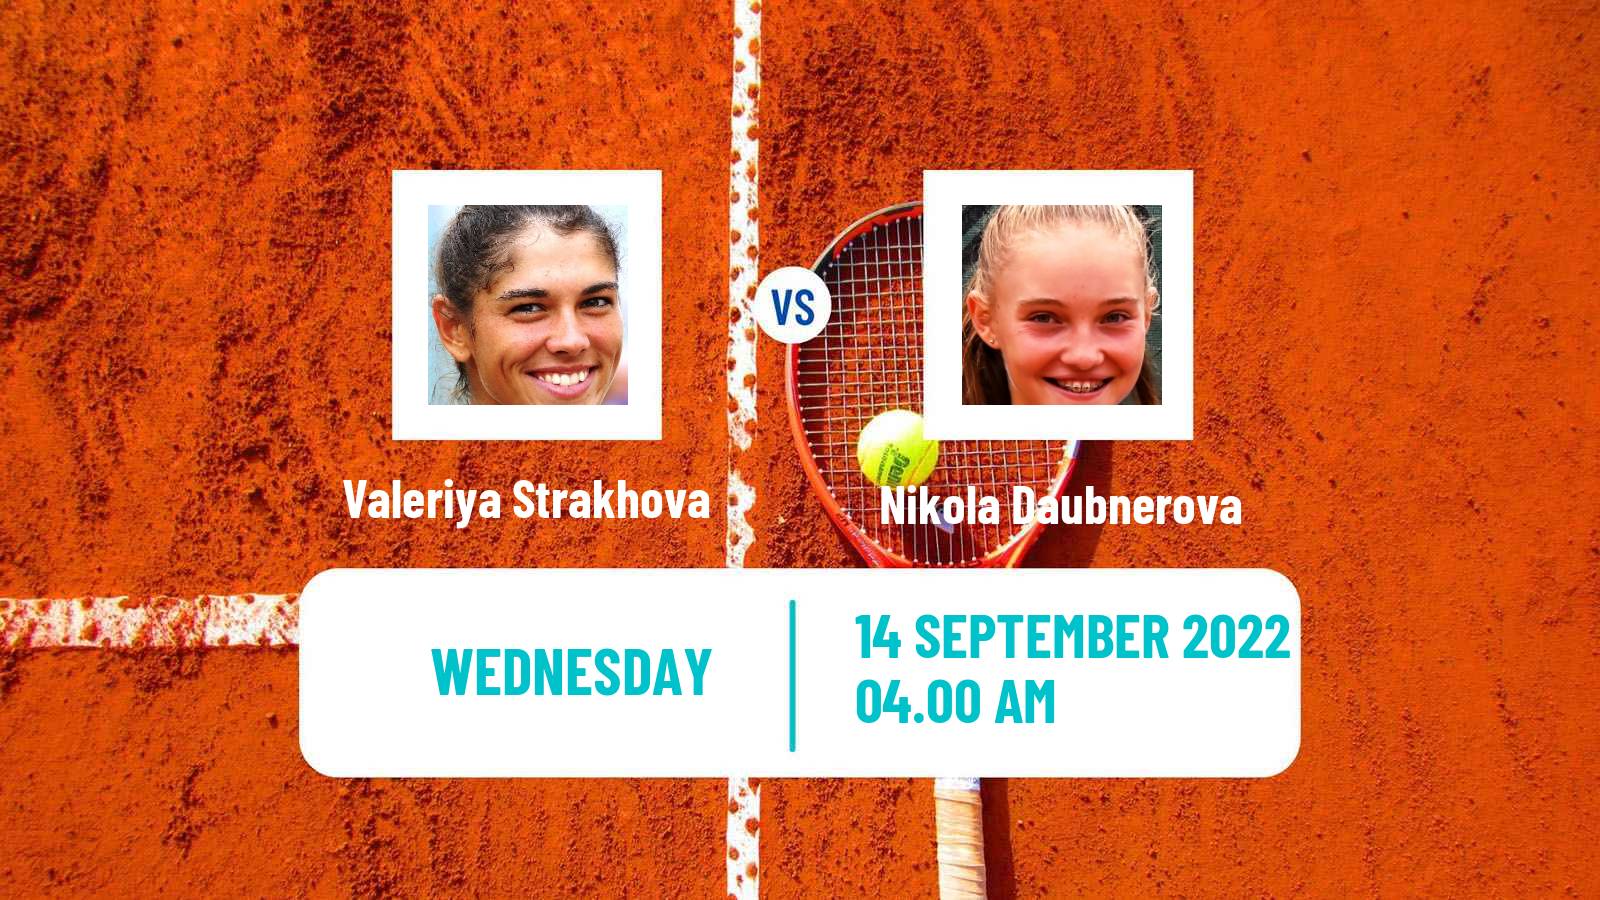 Tennis ITF Tournaments Valeriya Strakhova - Nikola Daubnerova